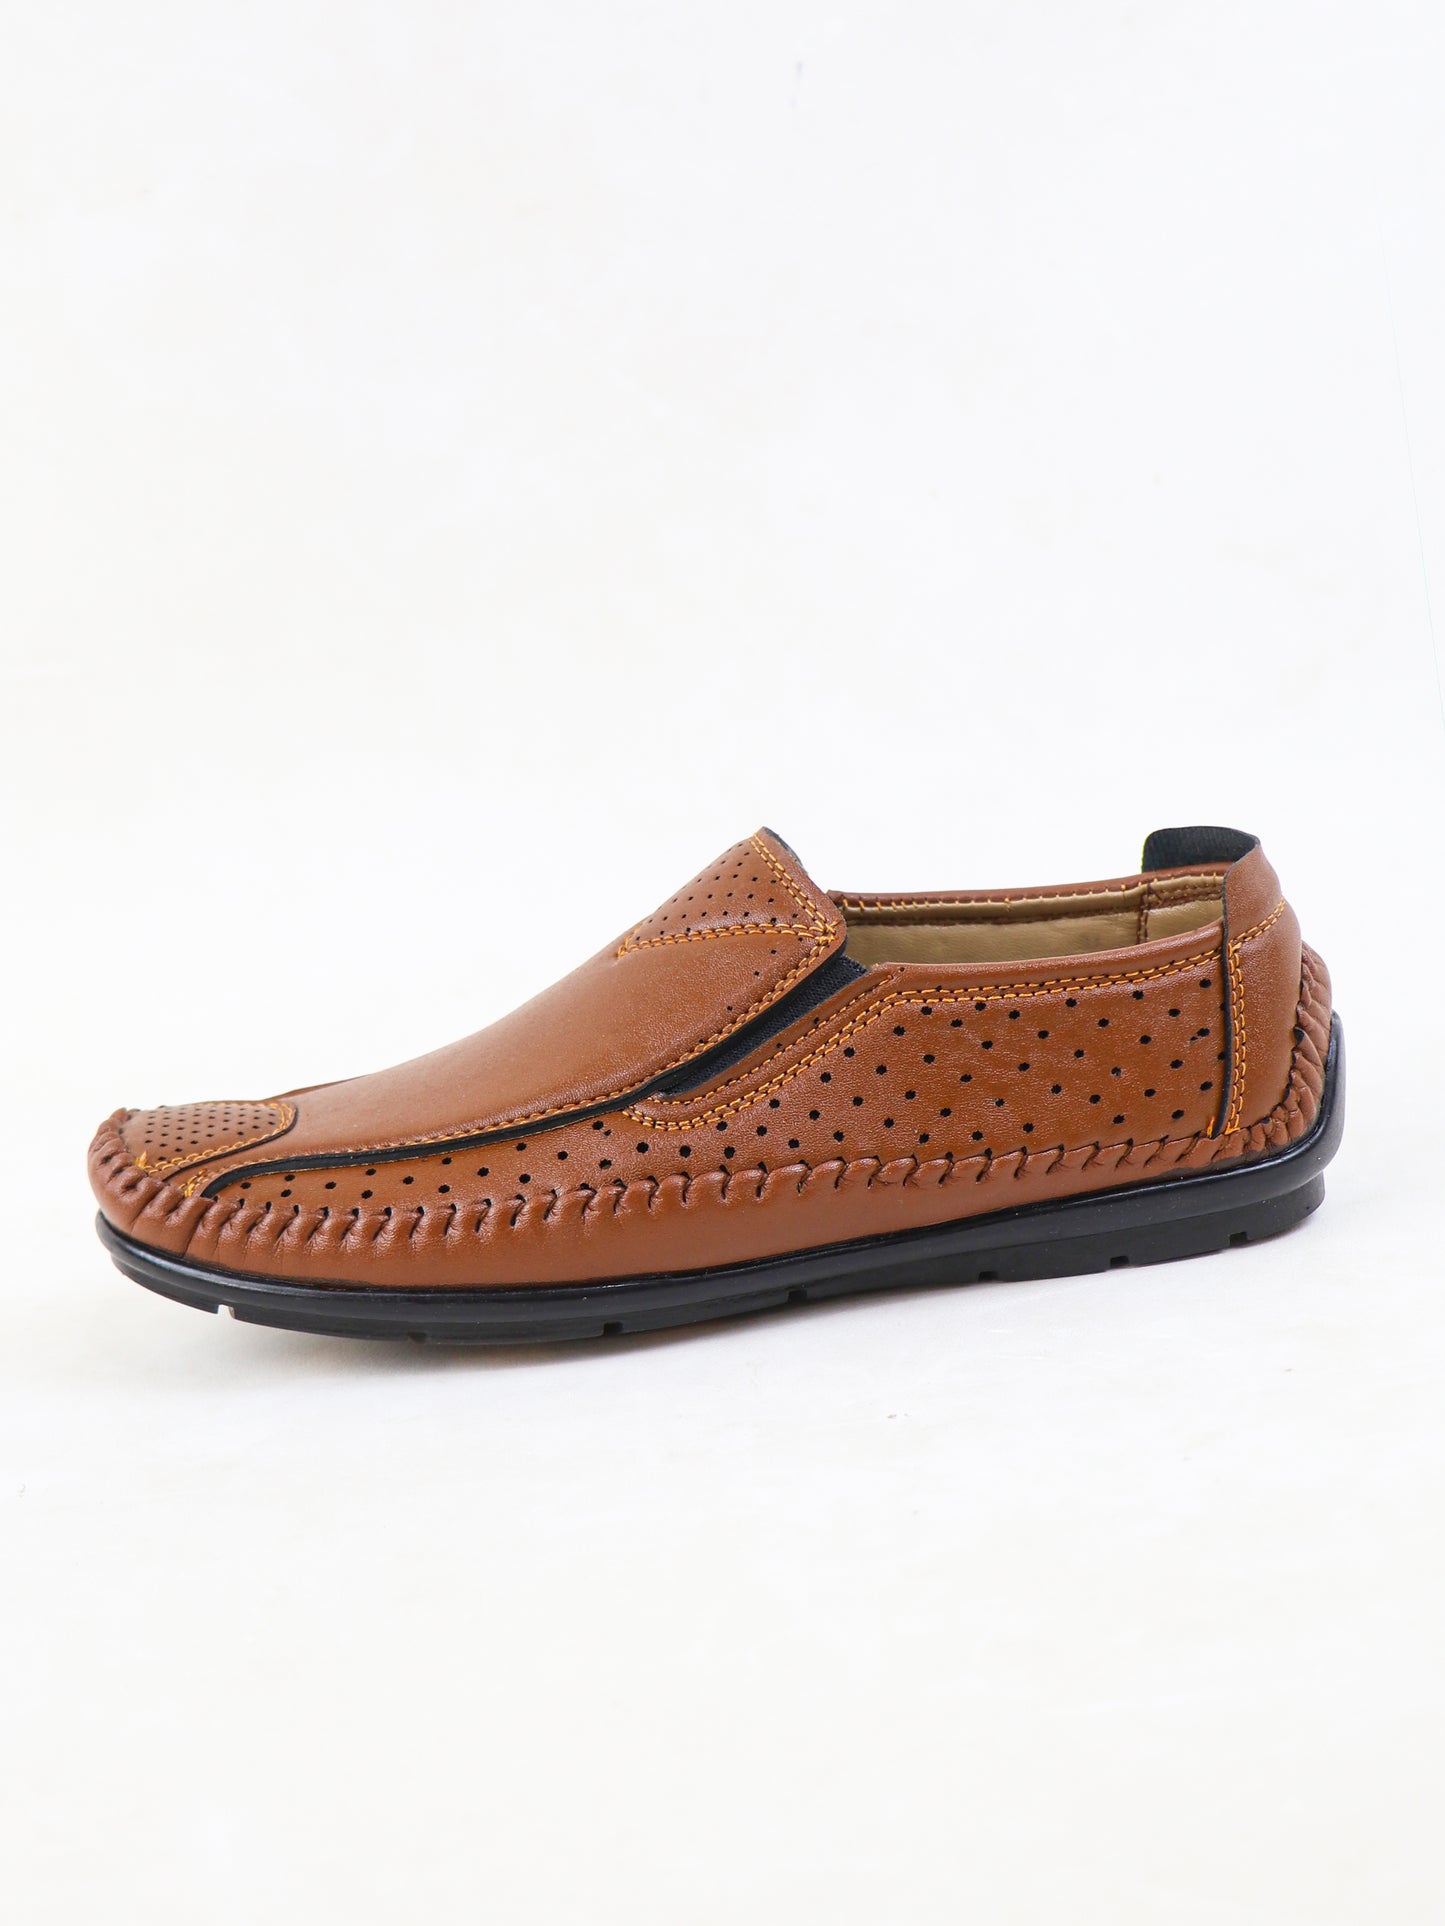 MS30 Men's Formal Shoes Light Brown